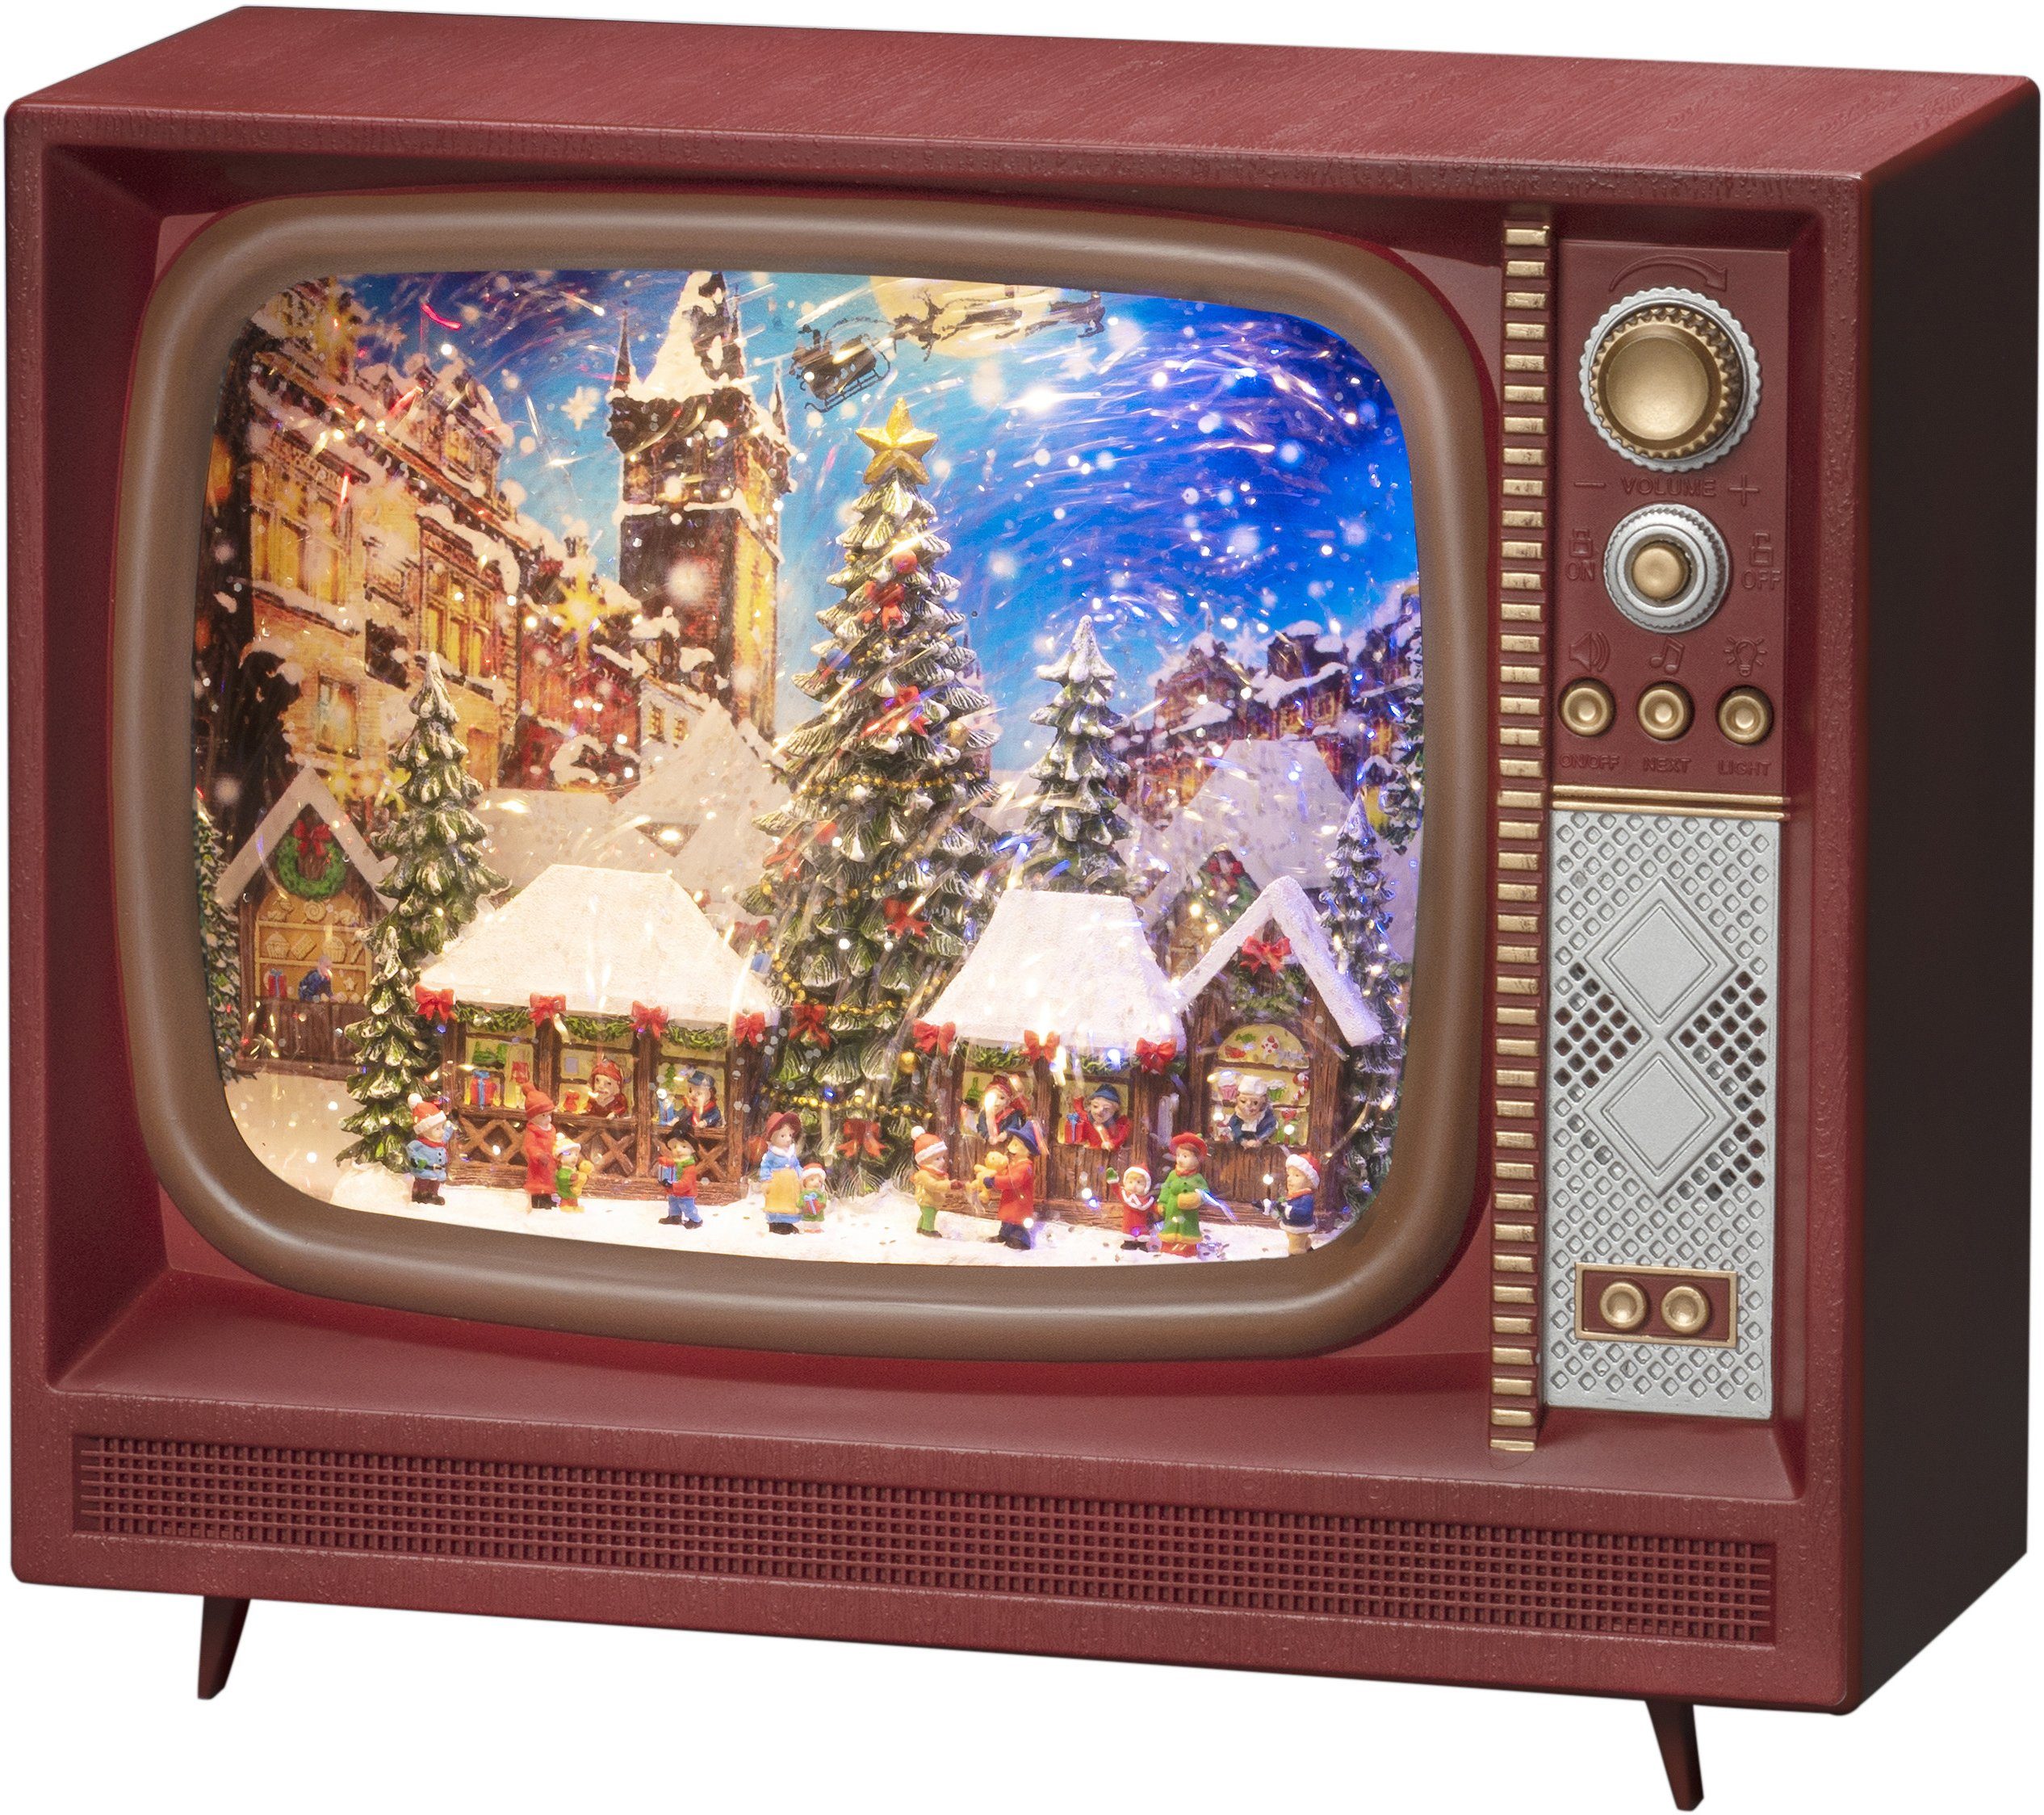 KONSTSMIDE LED Laterne Fernseher, Musik RGB, Weihnachtsdeko, " Weihnachtsmarkt" integriert, LED braun, Wasserlaterne, LED mit fest